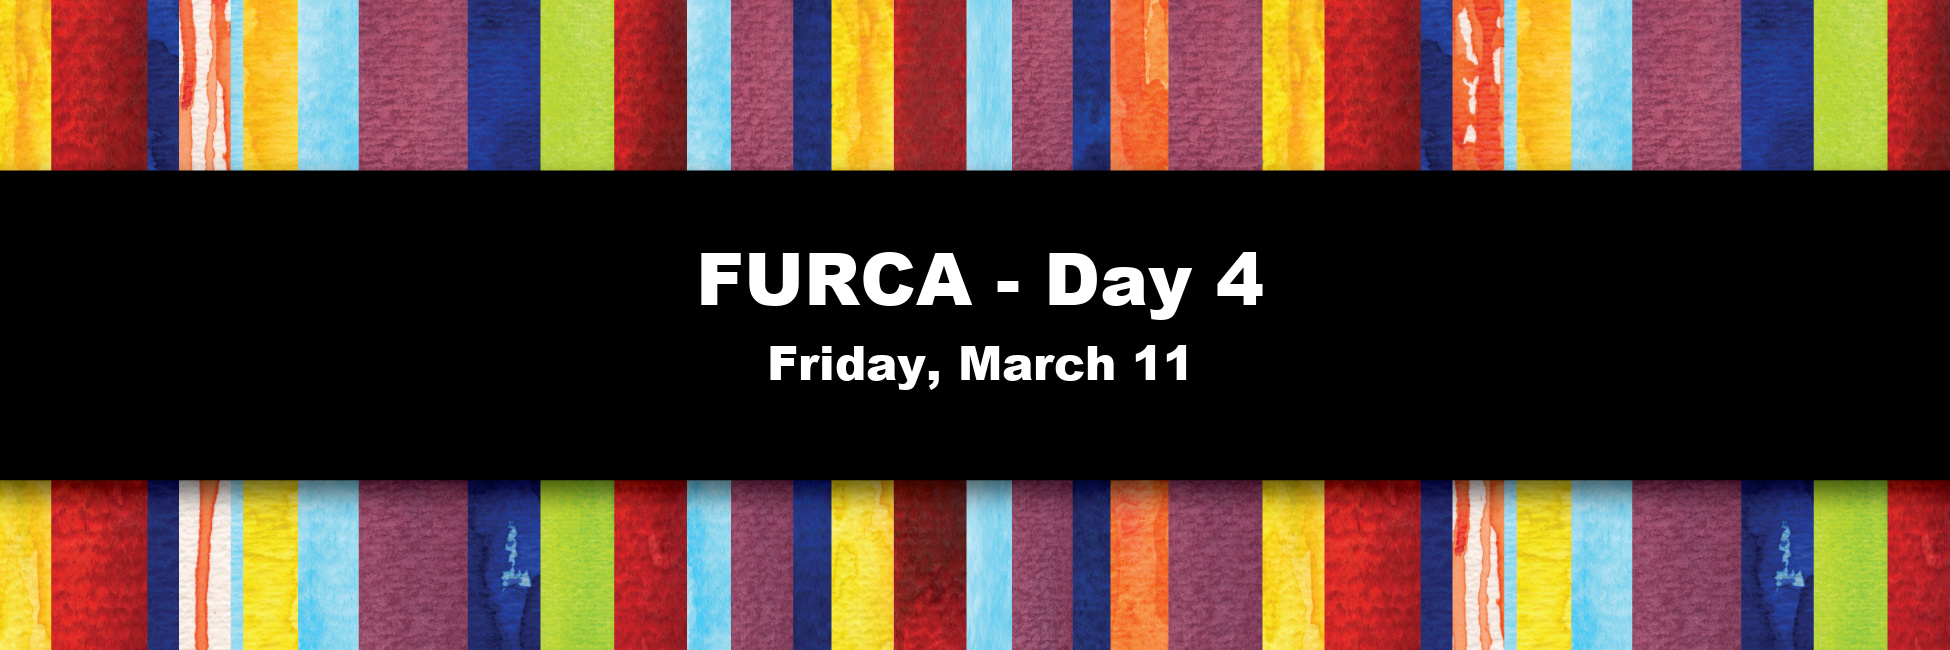 furca-day-4-2022-banner.jpg